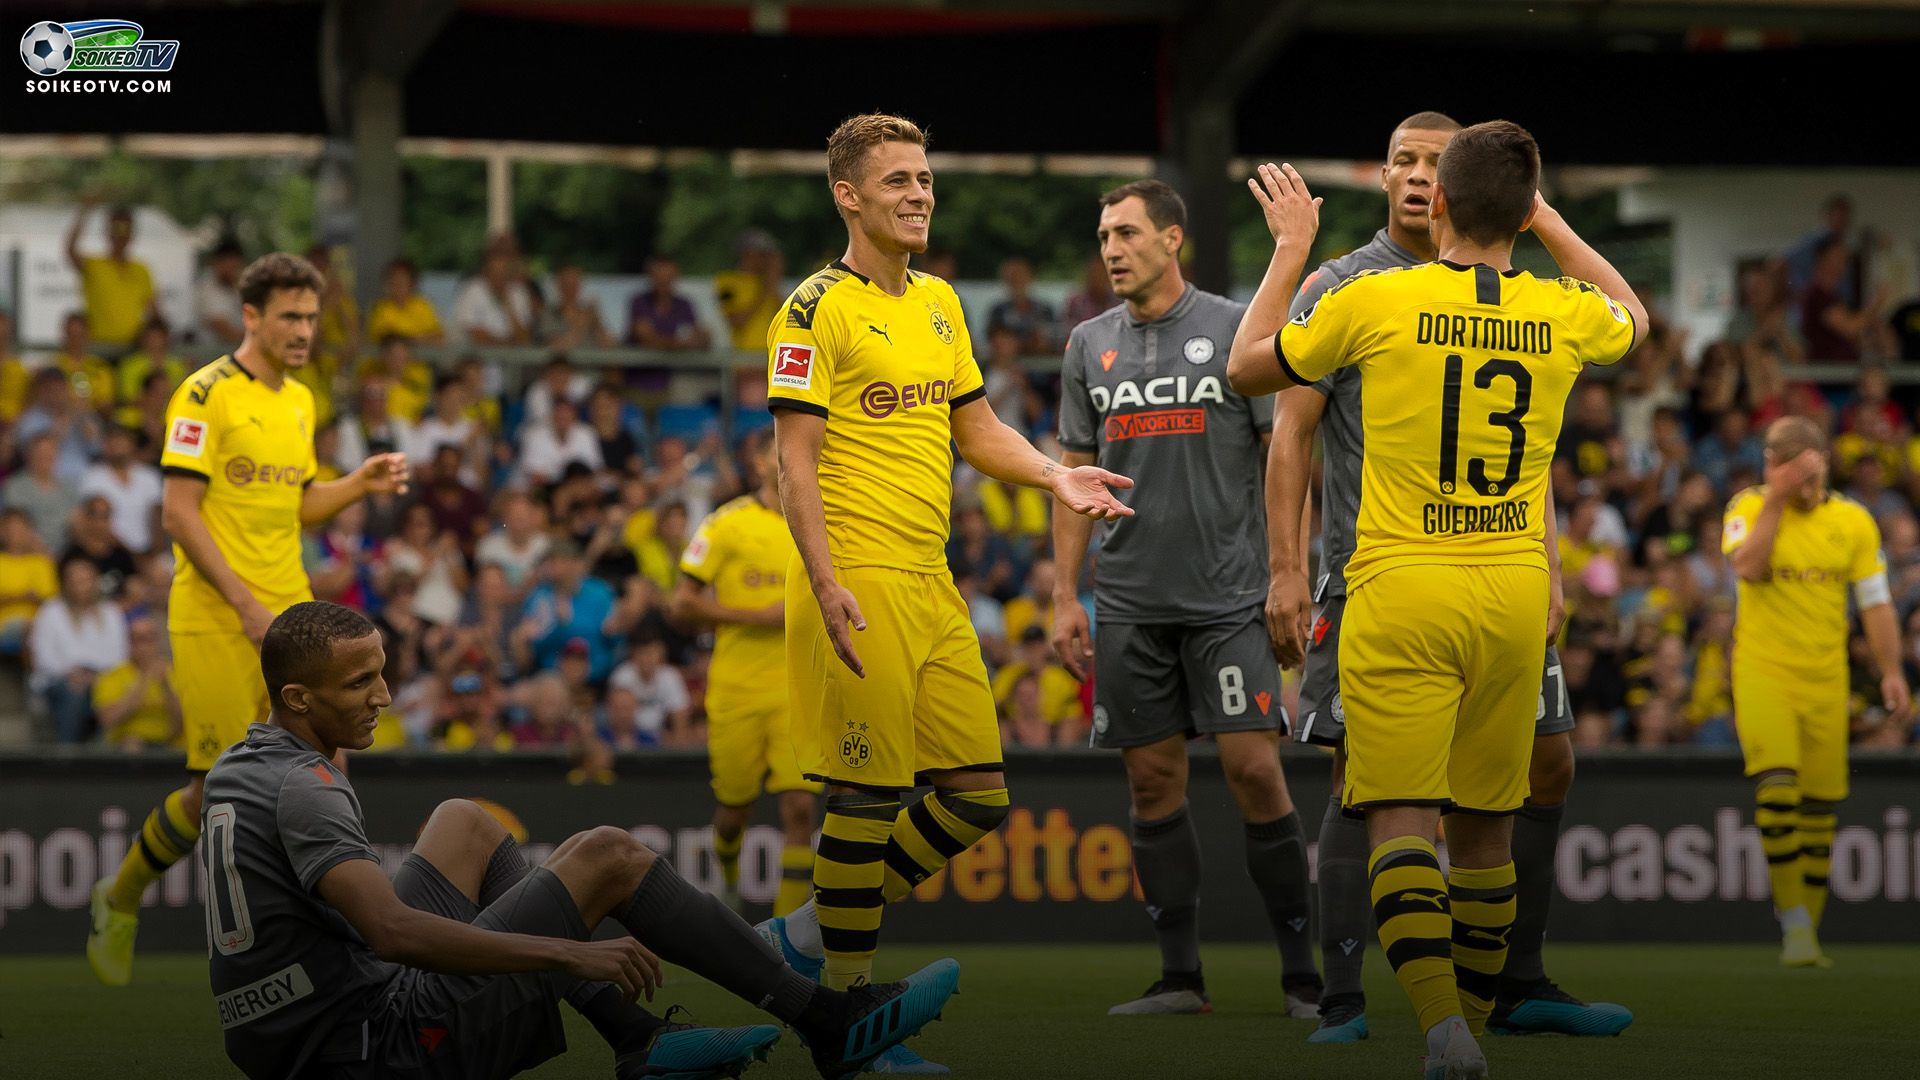 Soi kèo, nhận định St. Gallen vs Dortmund 00h30 ngày 31/07/2019